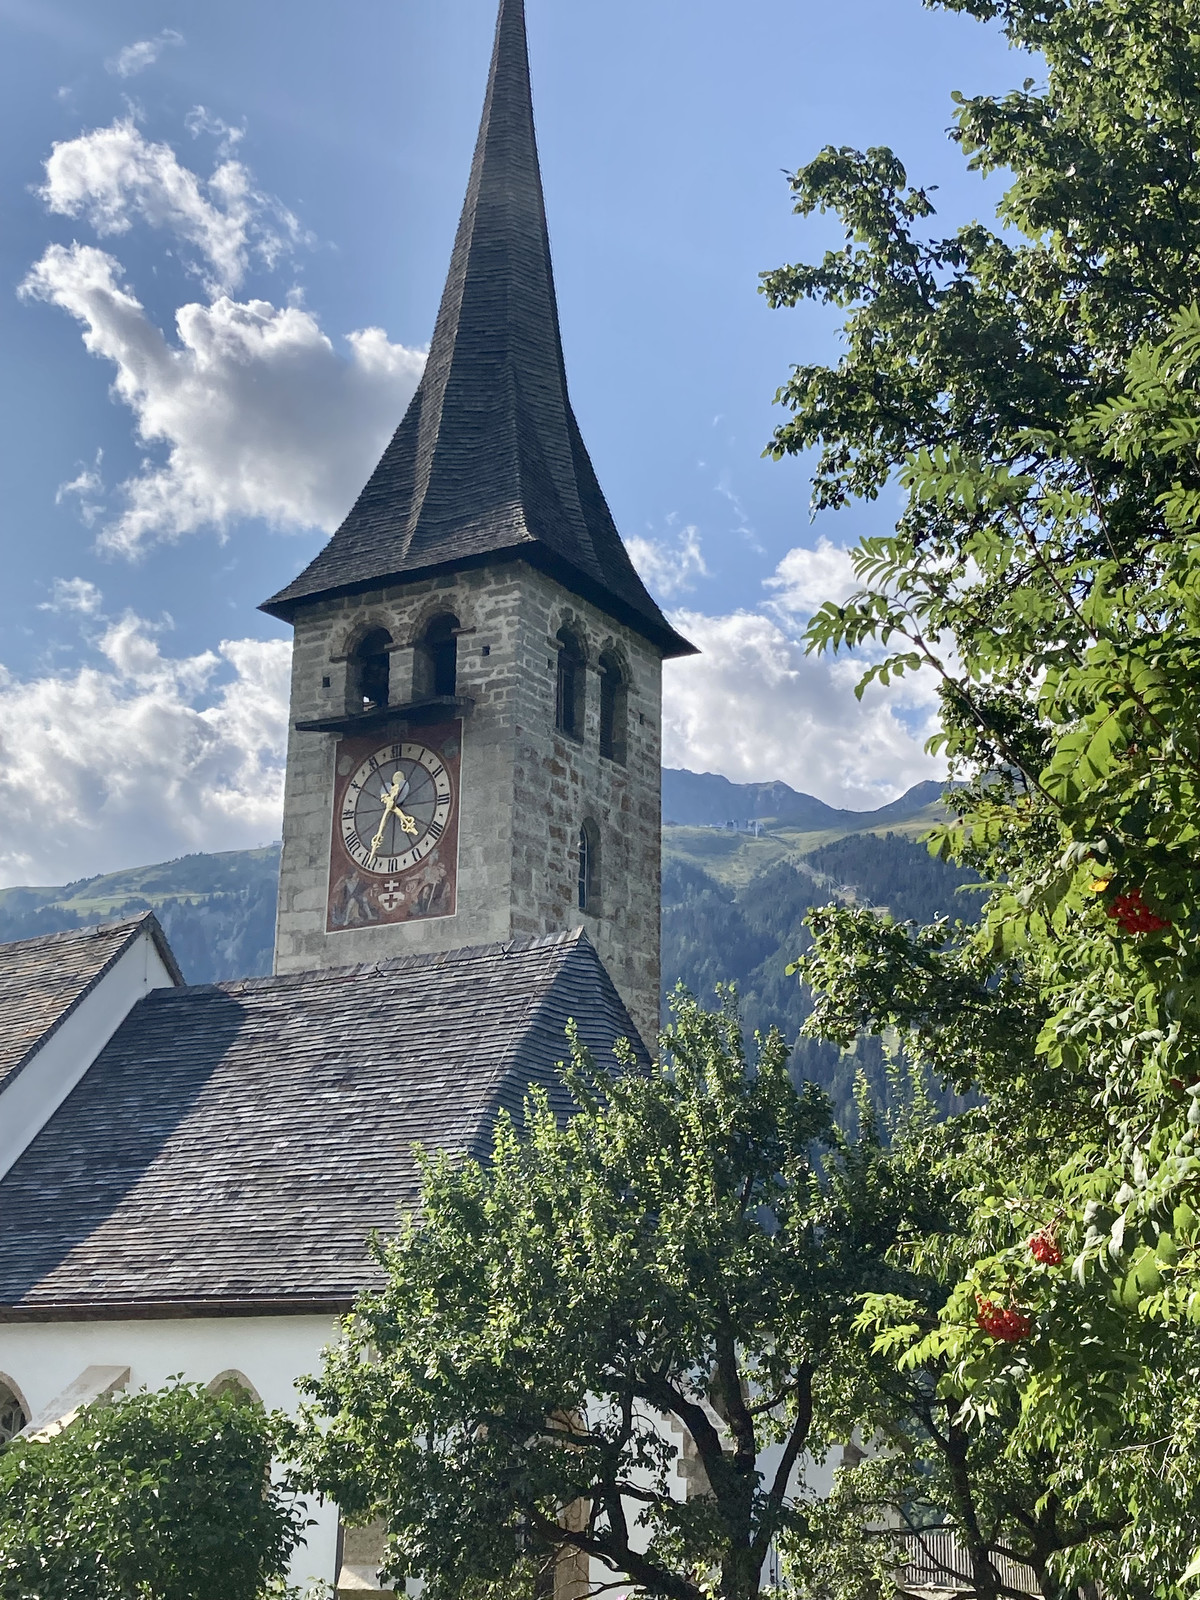 Kirche von Ernen und Blick von der linken Talseite des oberen Rhonetals zur Fiescheralp. Das Eggishorn ist vom Turm verdeckt.
(Bild: © Dieter Imboden)